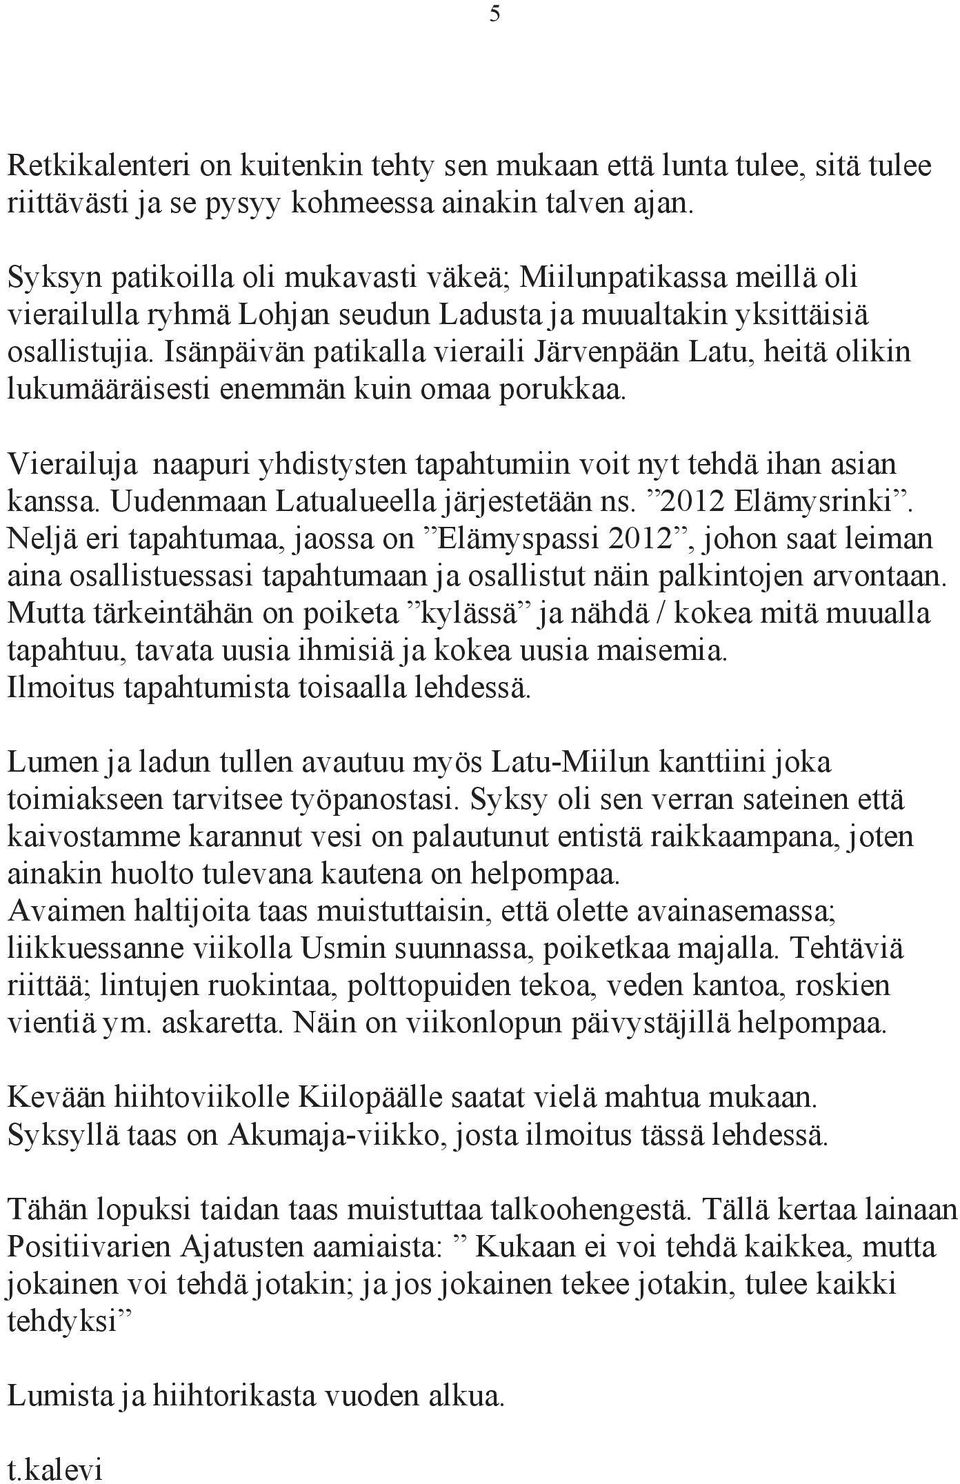 Isänpäivän patikalla vieraili Järvenpään Latu, heitä olikin lukumääräisesti enemmän kuin omaa porukkaa. Vierailuja naapuri yhdistysten tapahtumiin voit nyt tehdä ihan asian kanssa.